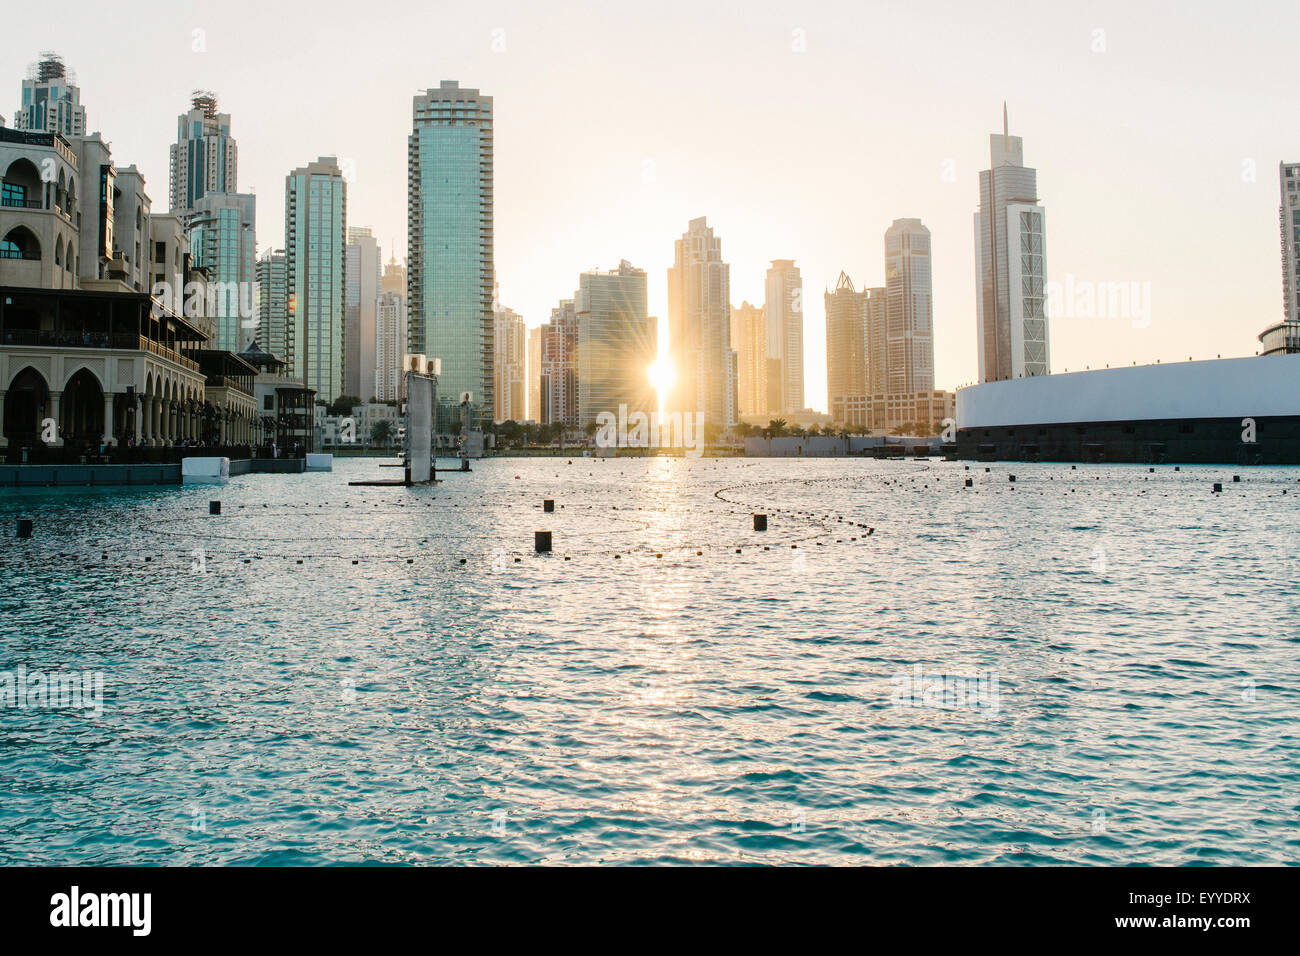 Sunset over city skyline, Dubai, United Arab Emirates Stock Photo